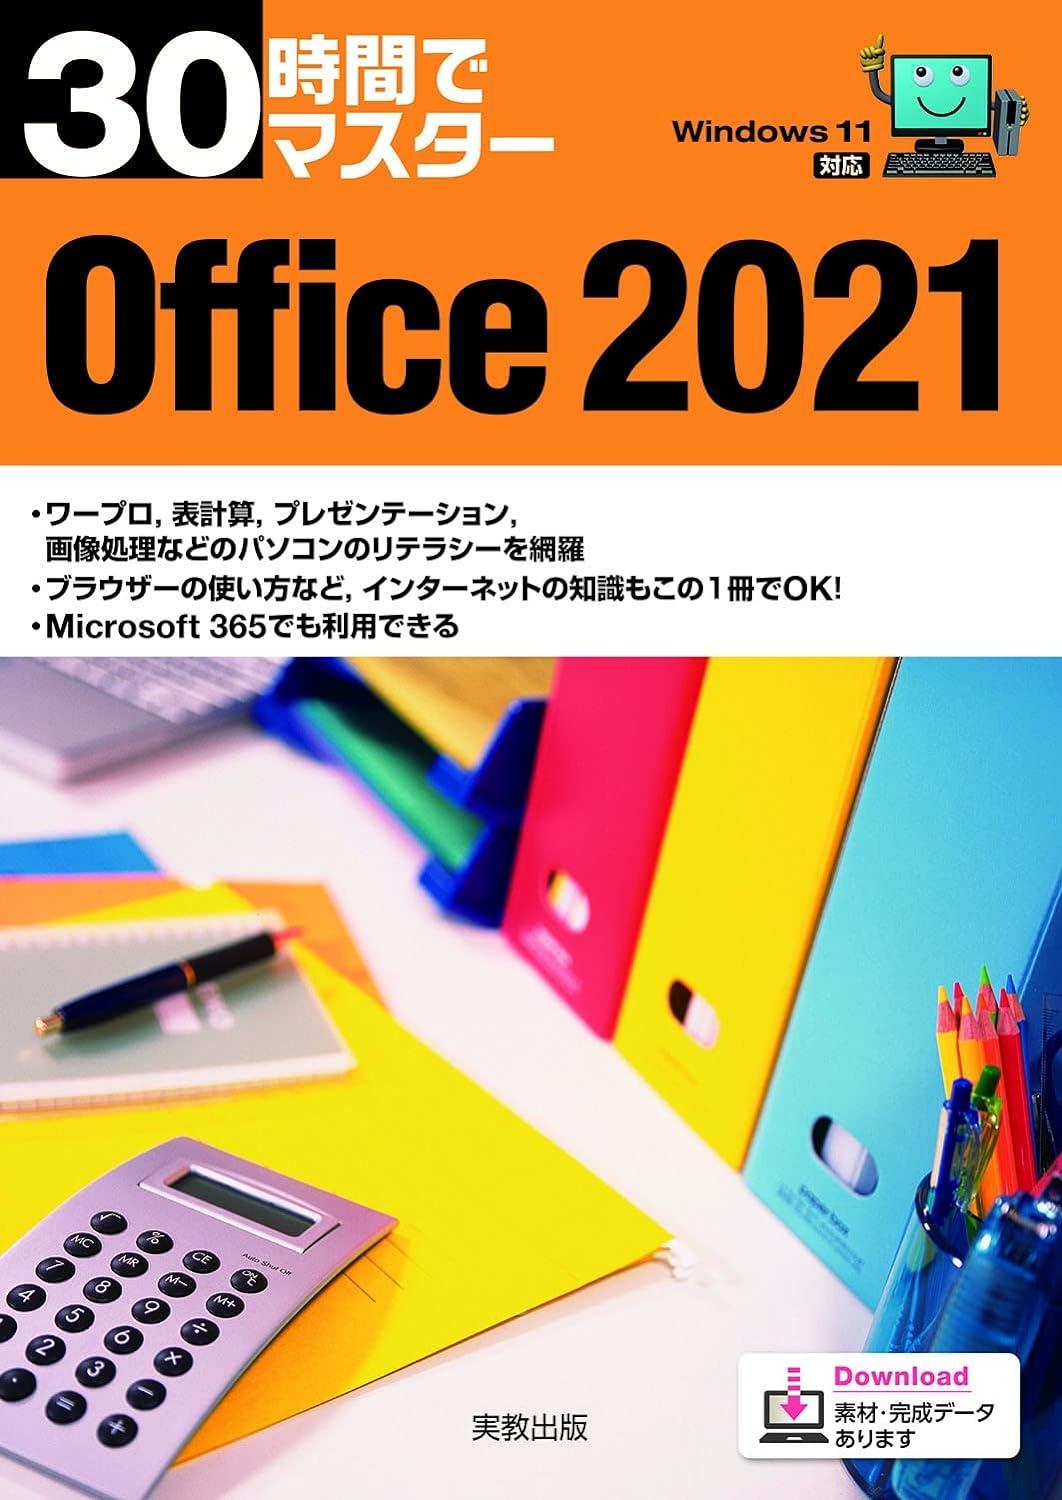 30ԂŃ}X^[Office 2021 oŊJ/